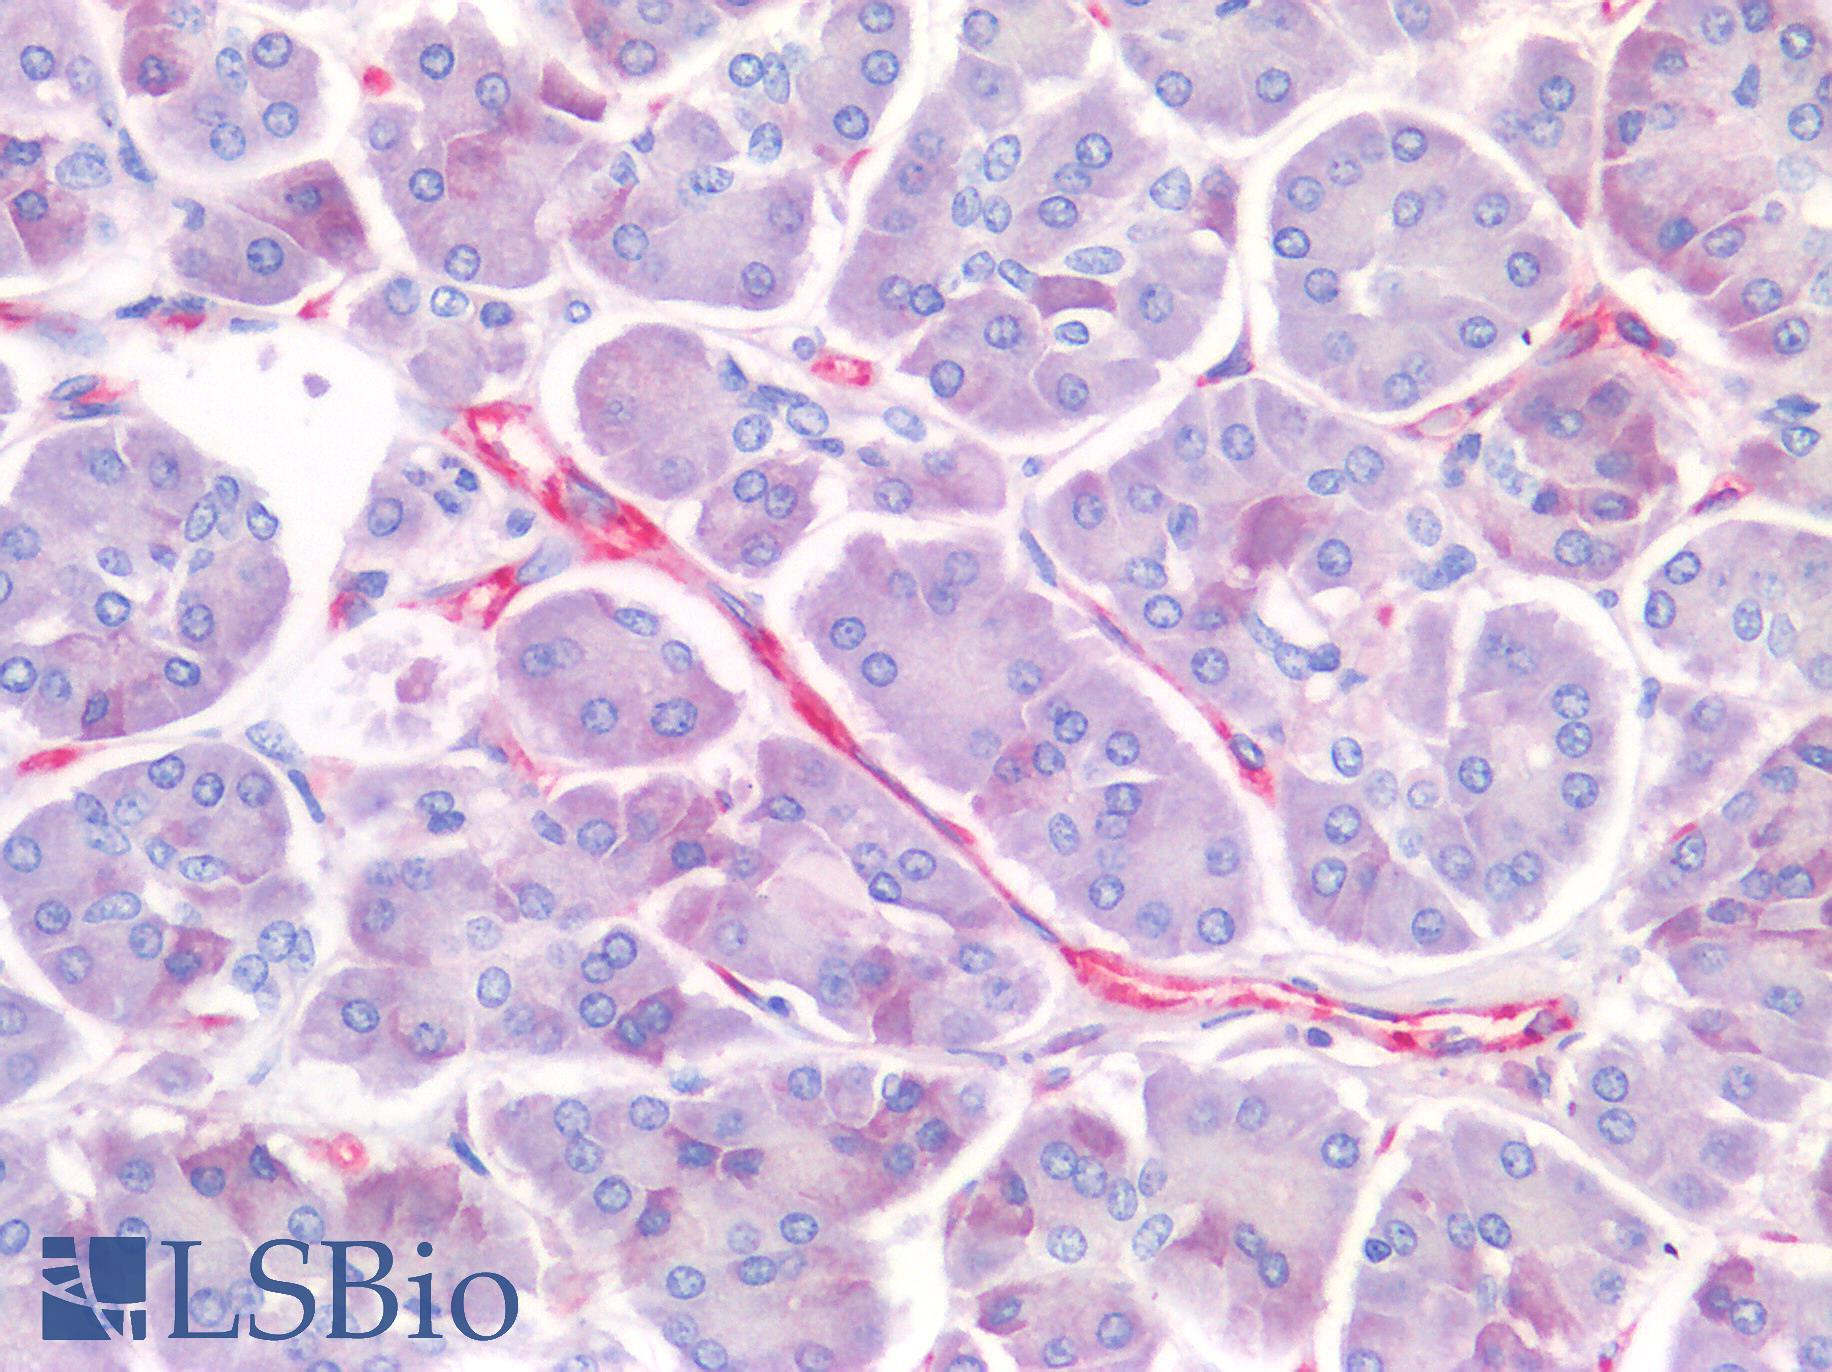 PECAM-1 / CD31 Antibody - Human Pancreas: Formalin-Fixed, Paraffin-Embedded (FFPE)